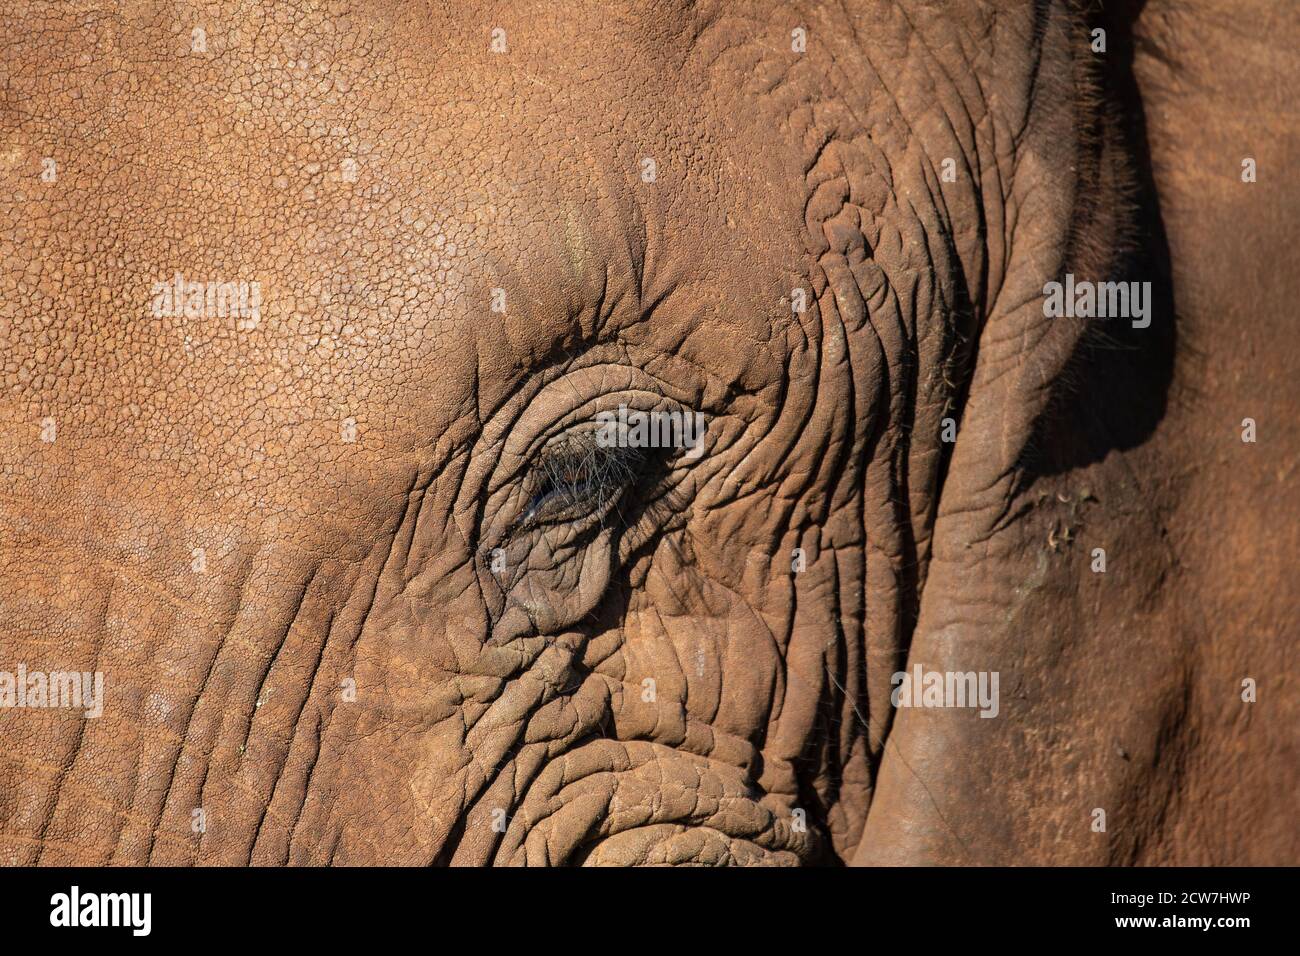 Eine Nahaufnahme des Auges und der Wimpern eines afrikanischen Elefanten Loxodonta africana auf einem großen erwachsenen Elefanten in KwaZulku Natal Distrikt von Südafrika Stockfoto